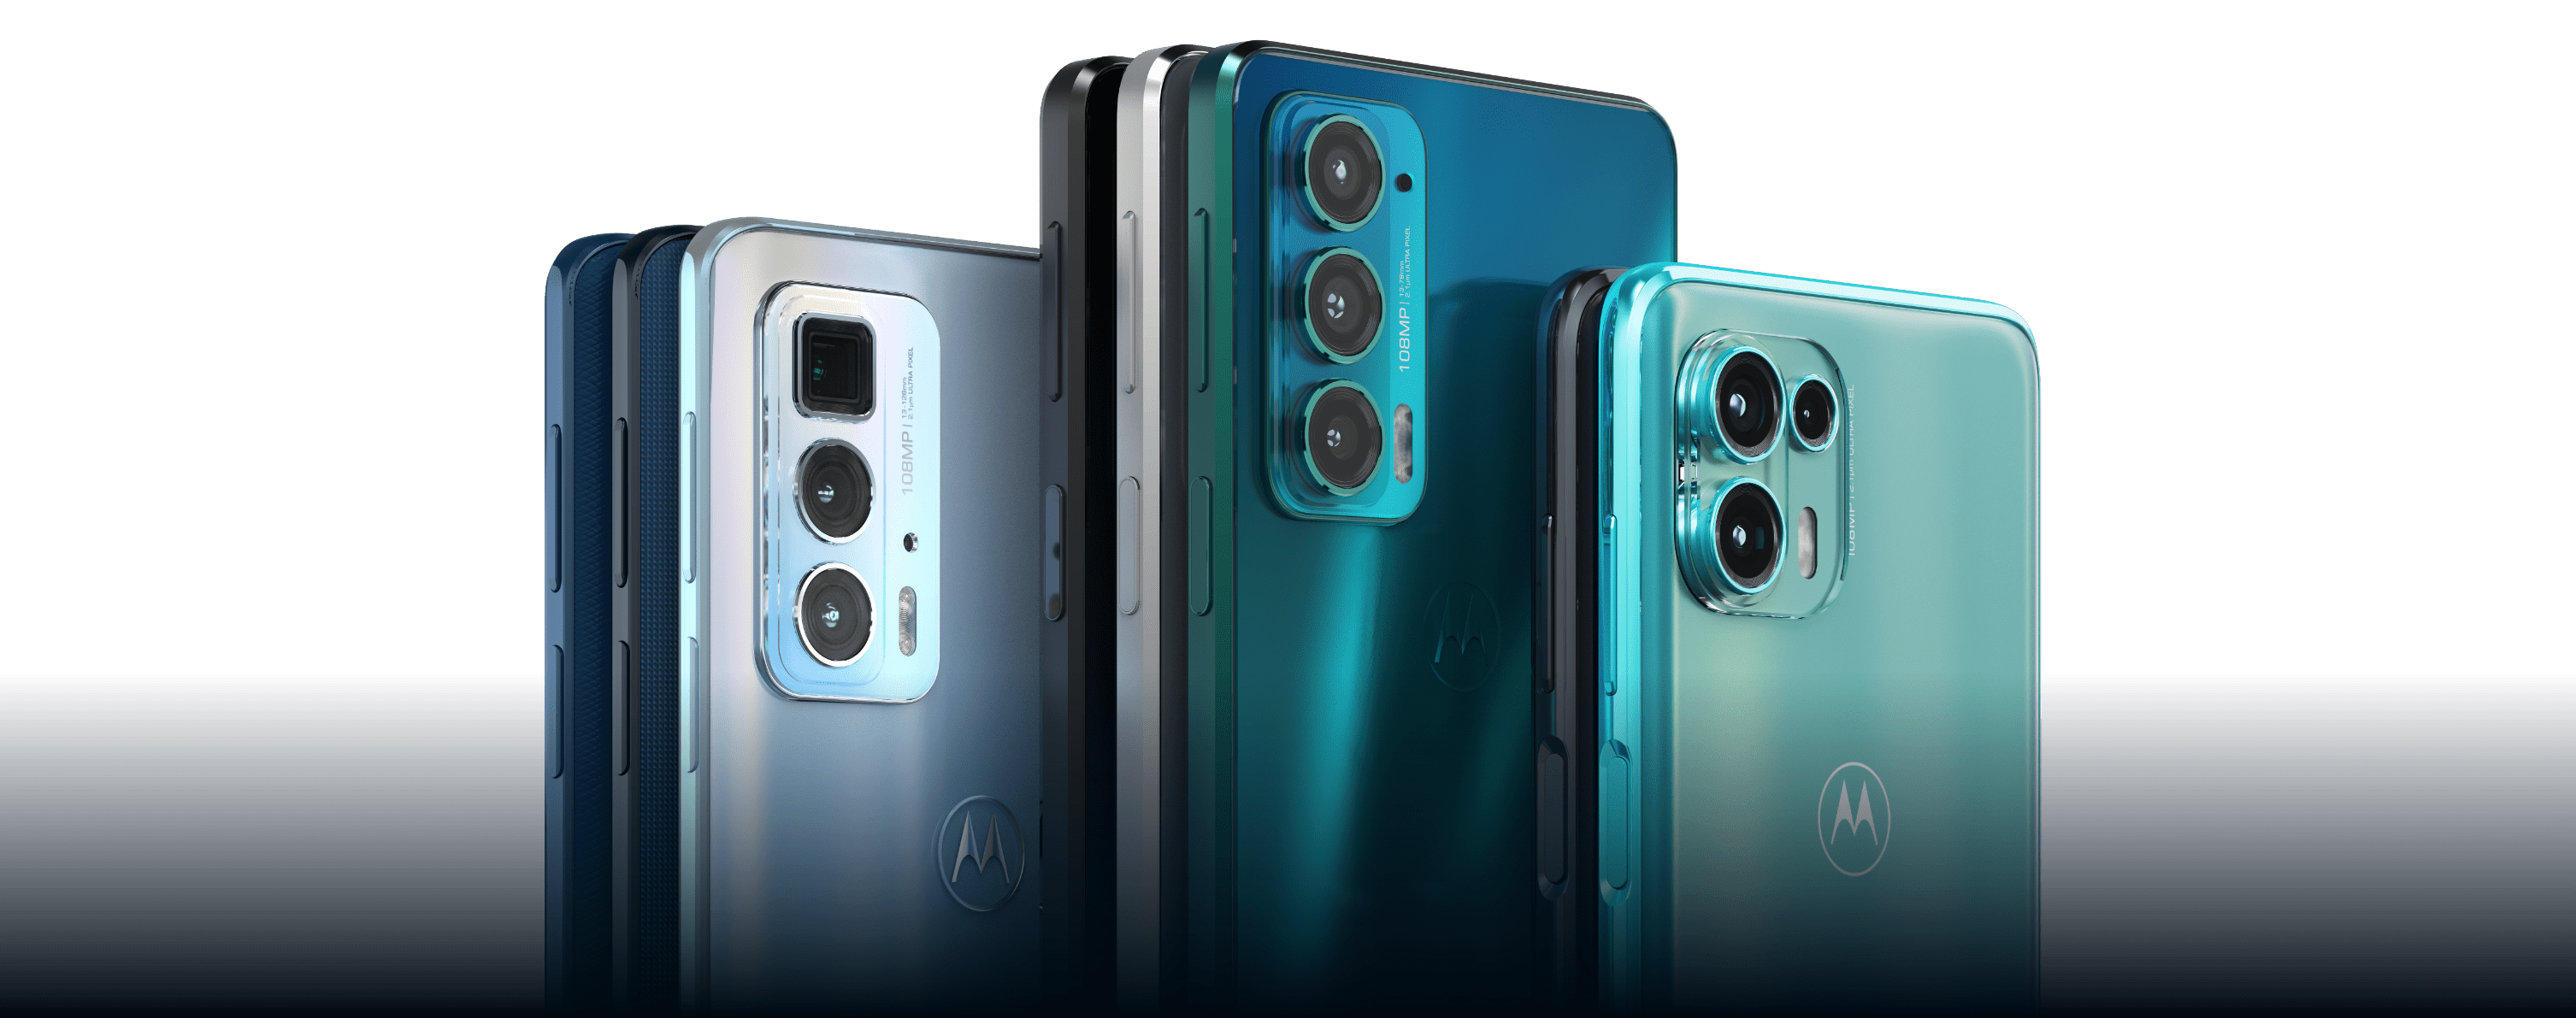 Motorola edge 20 pro price in ksa